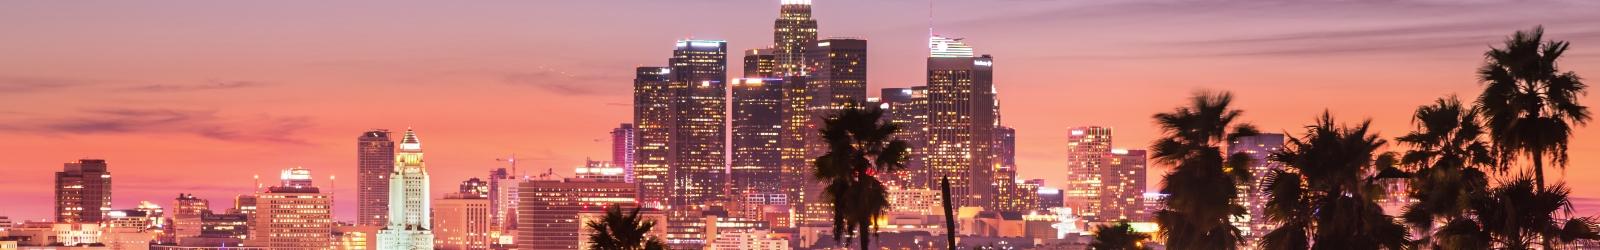 Cosa vedere a Los Angeles in tre giorni | Turisanda 